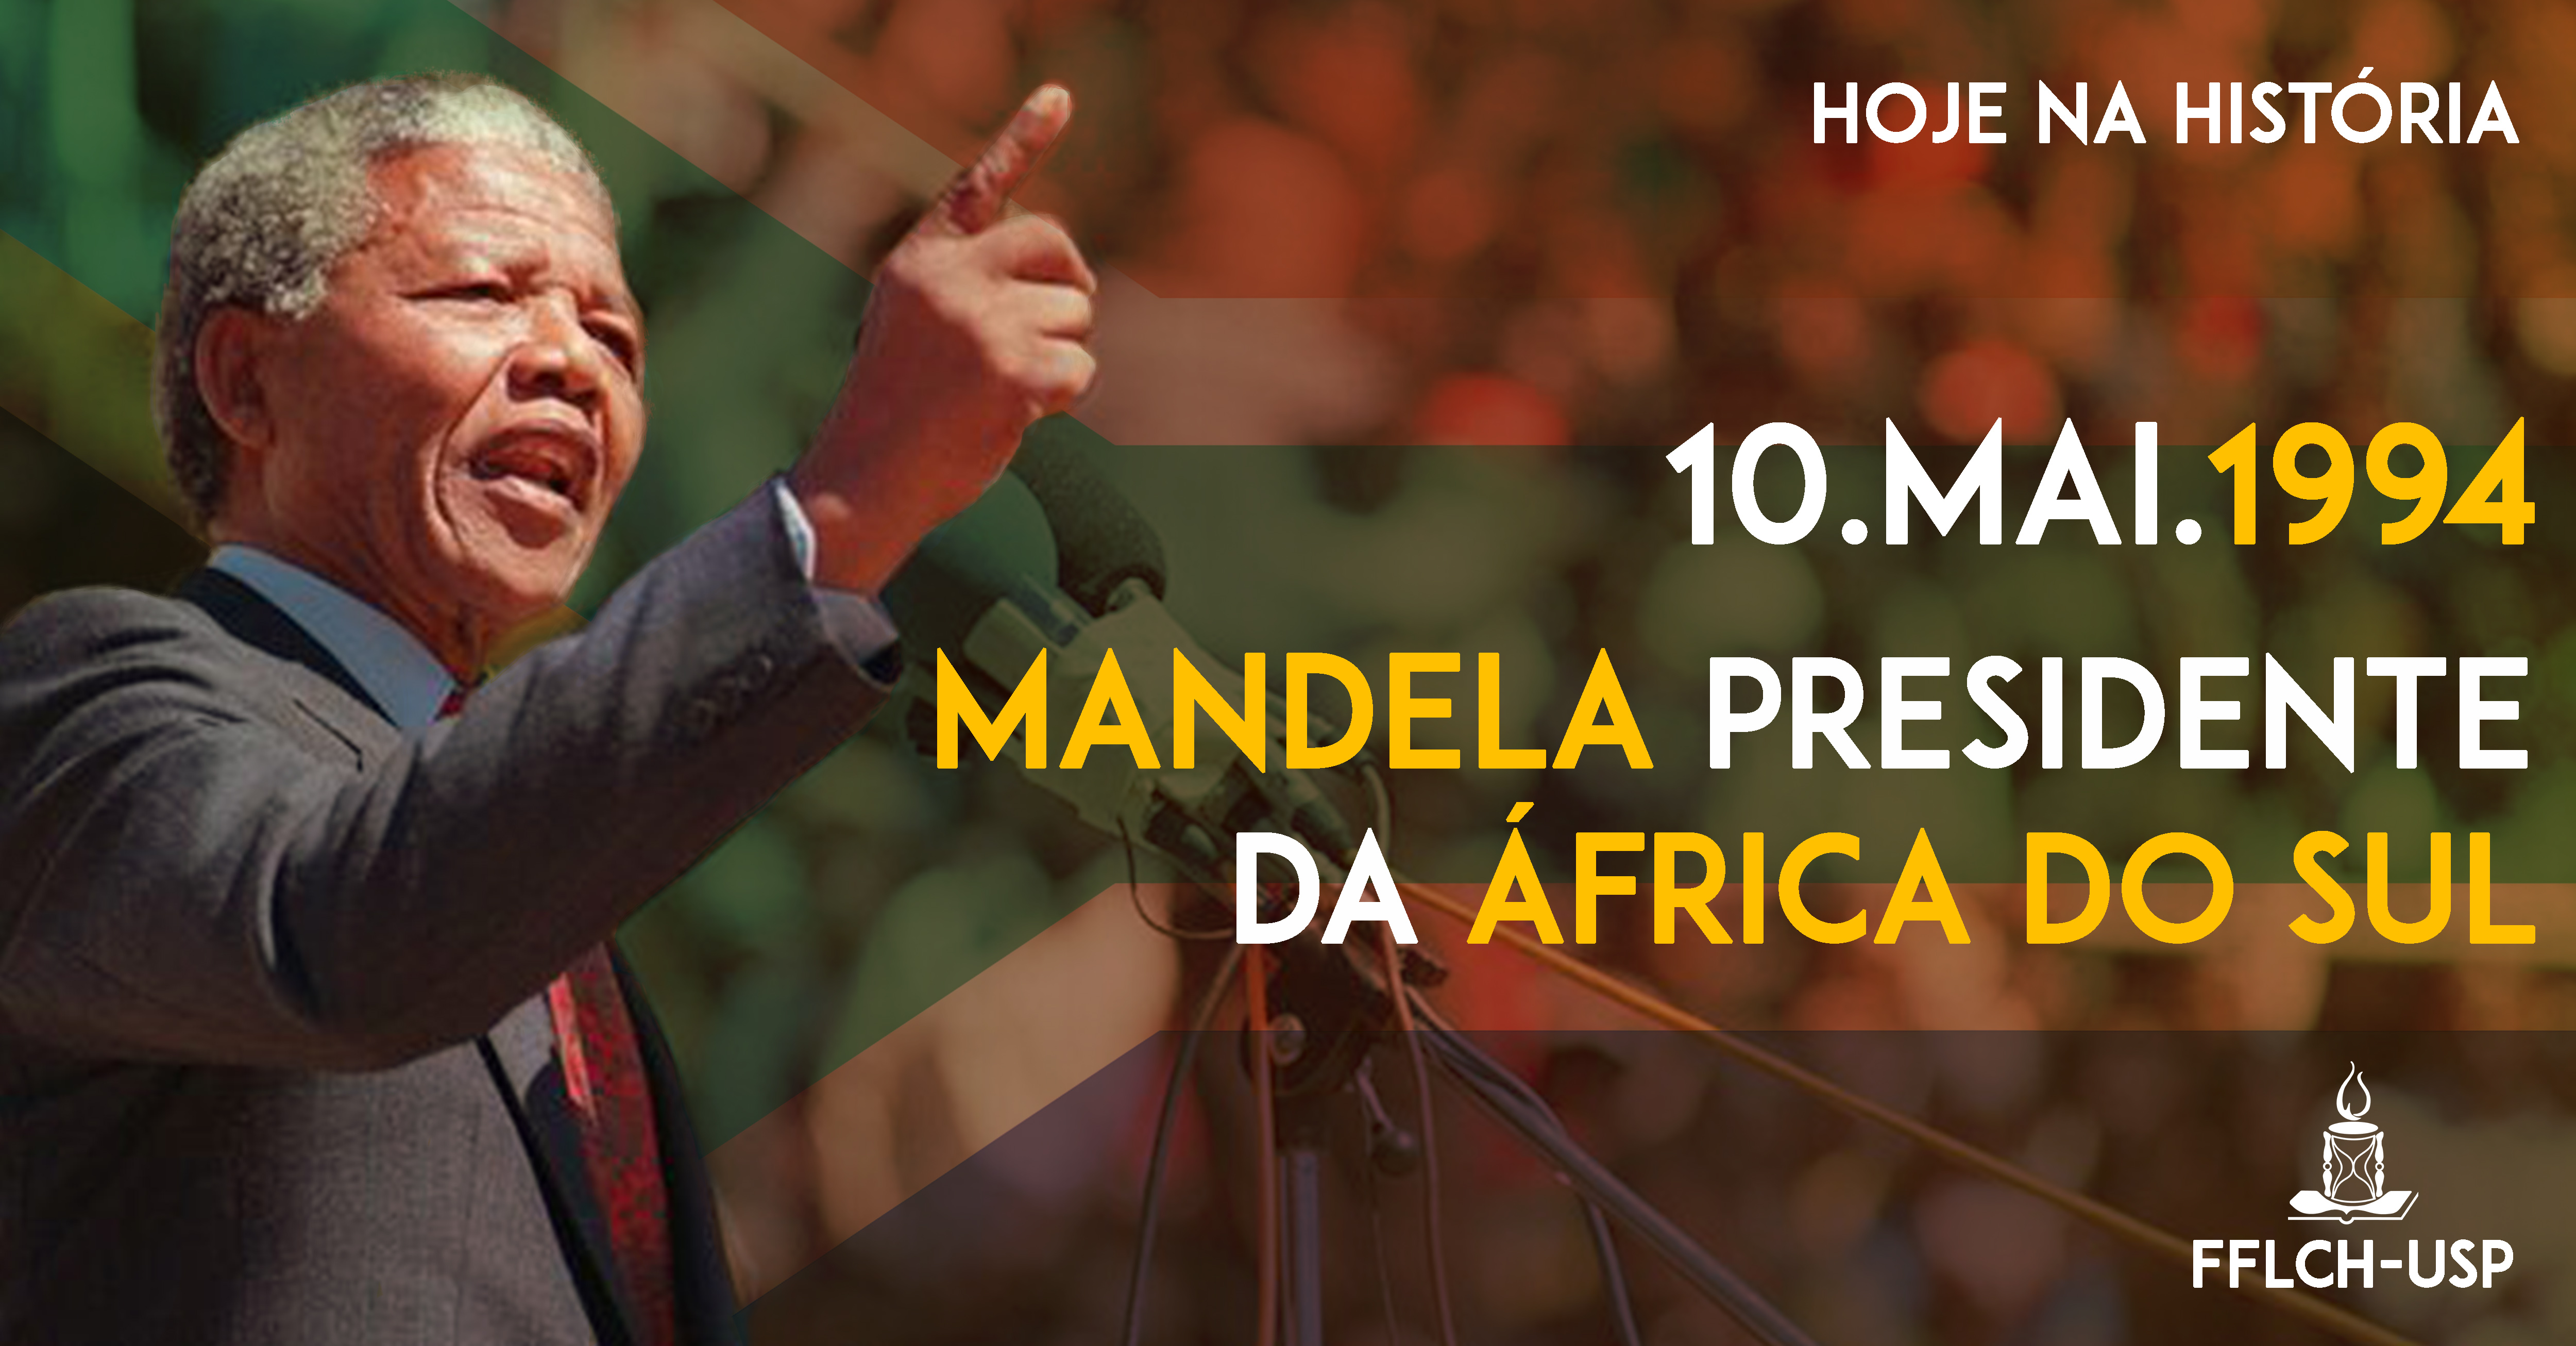 Mandela assume a presidência da África do Sul (Arte: Davi Morais)